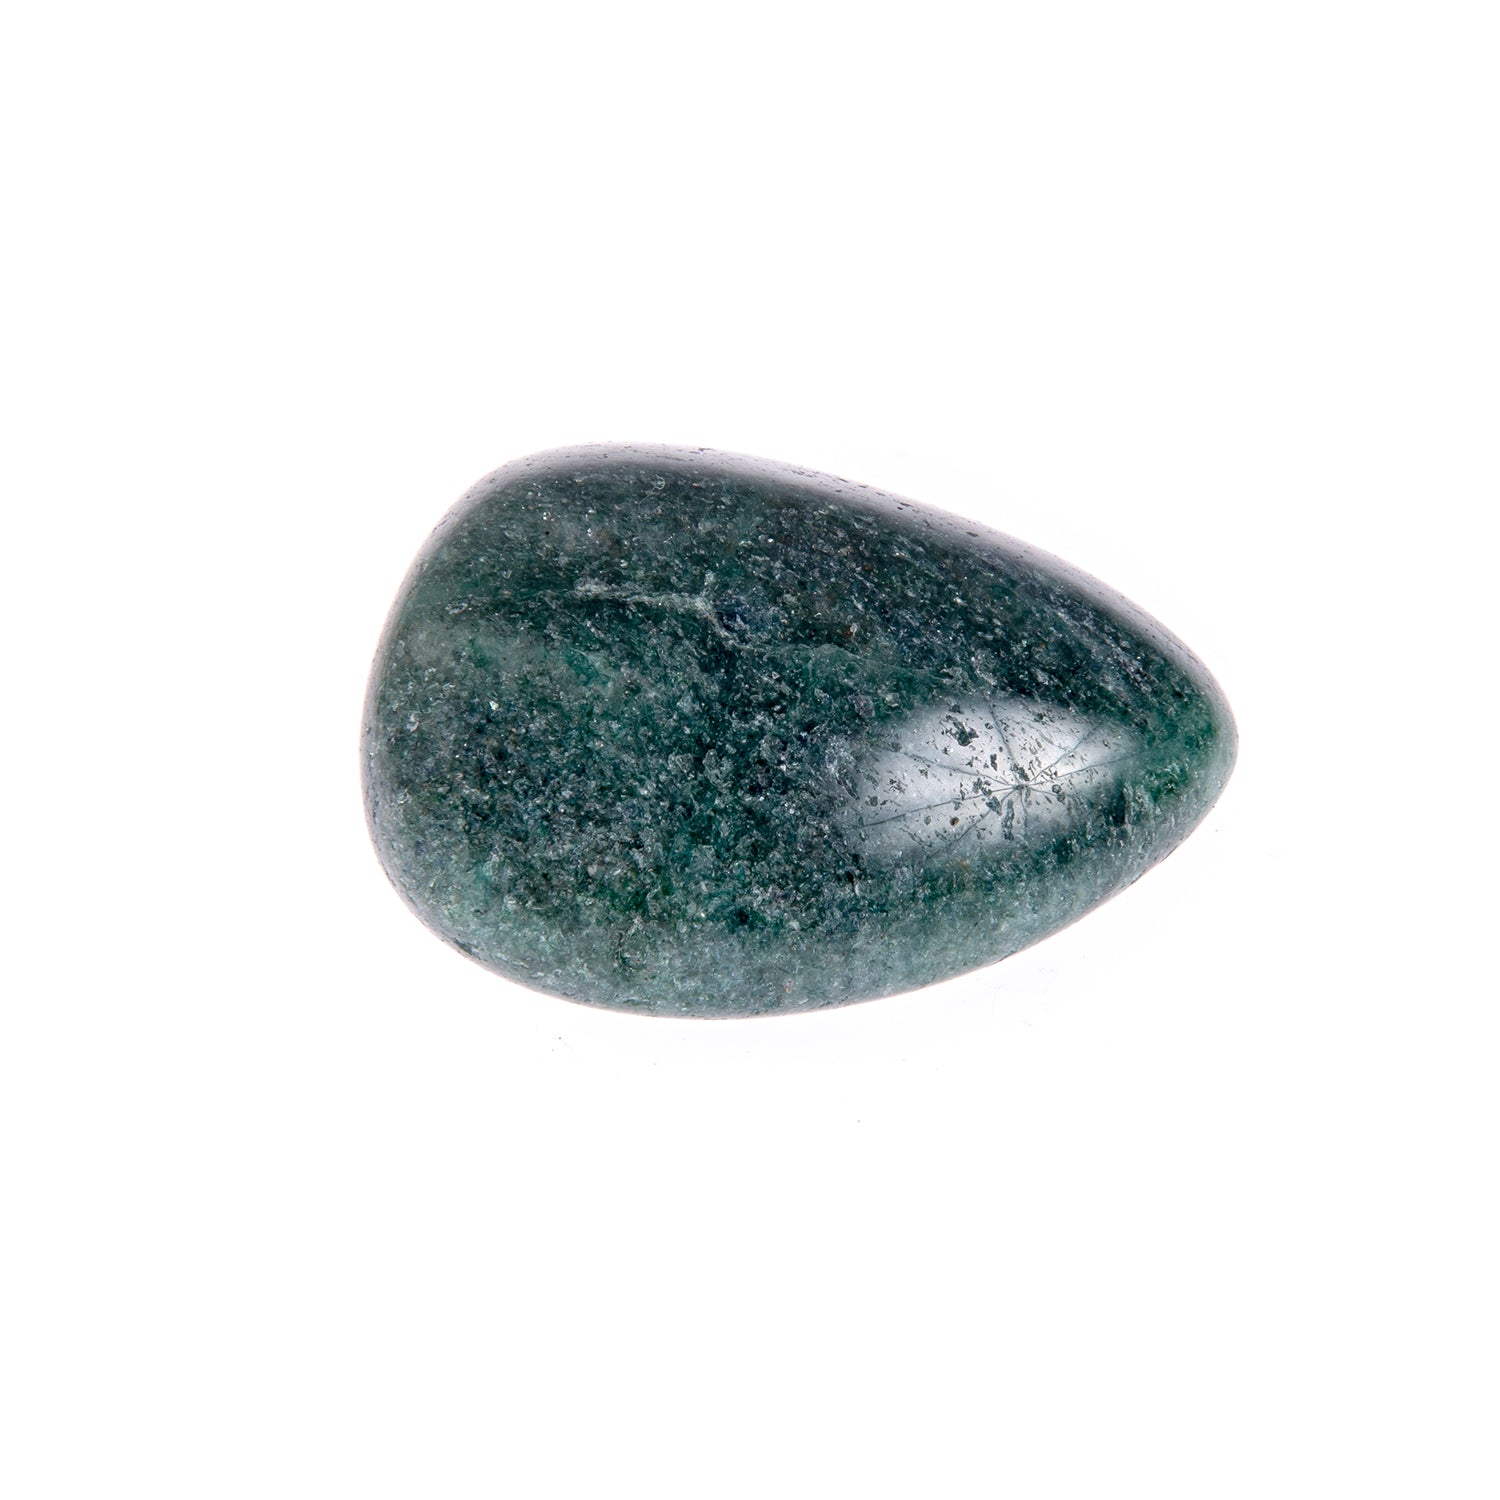 Burattato Avventurina - Le Origini pietre dure pietre semipreziose, pietre naturali